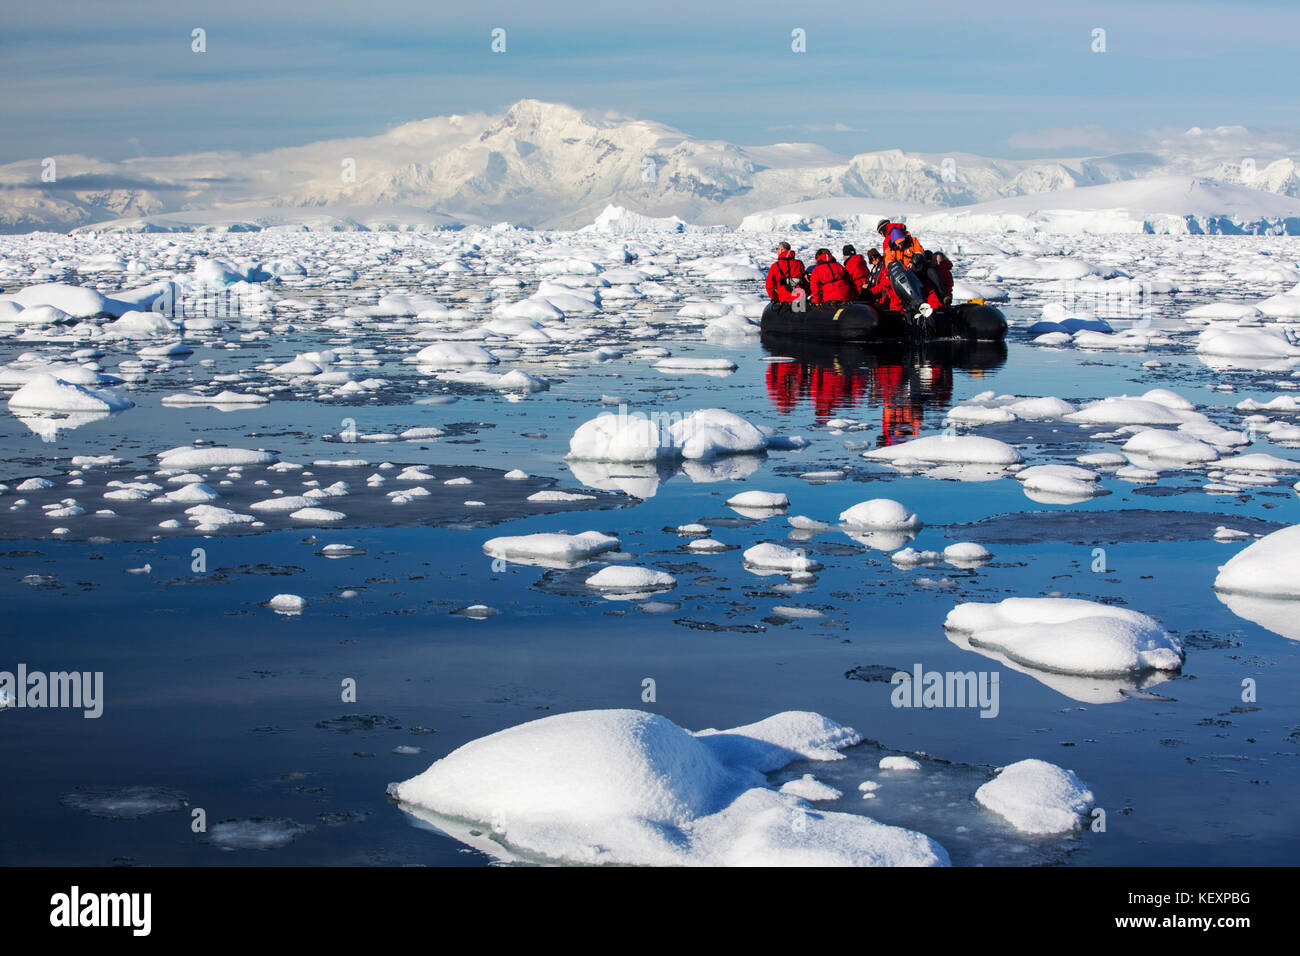 Les membres d'une croisière expédition en Antarctique dans un Zodiak dans Fournier Bay dans le détroit de Gerlache sur la péninsule antarctique. La péninsule antarctique est l'un des plus rapidement les zones de réchauffement de la planète. Banque D'Images